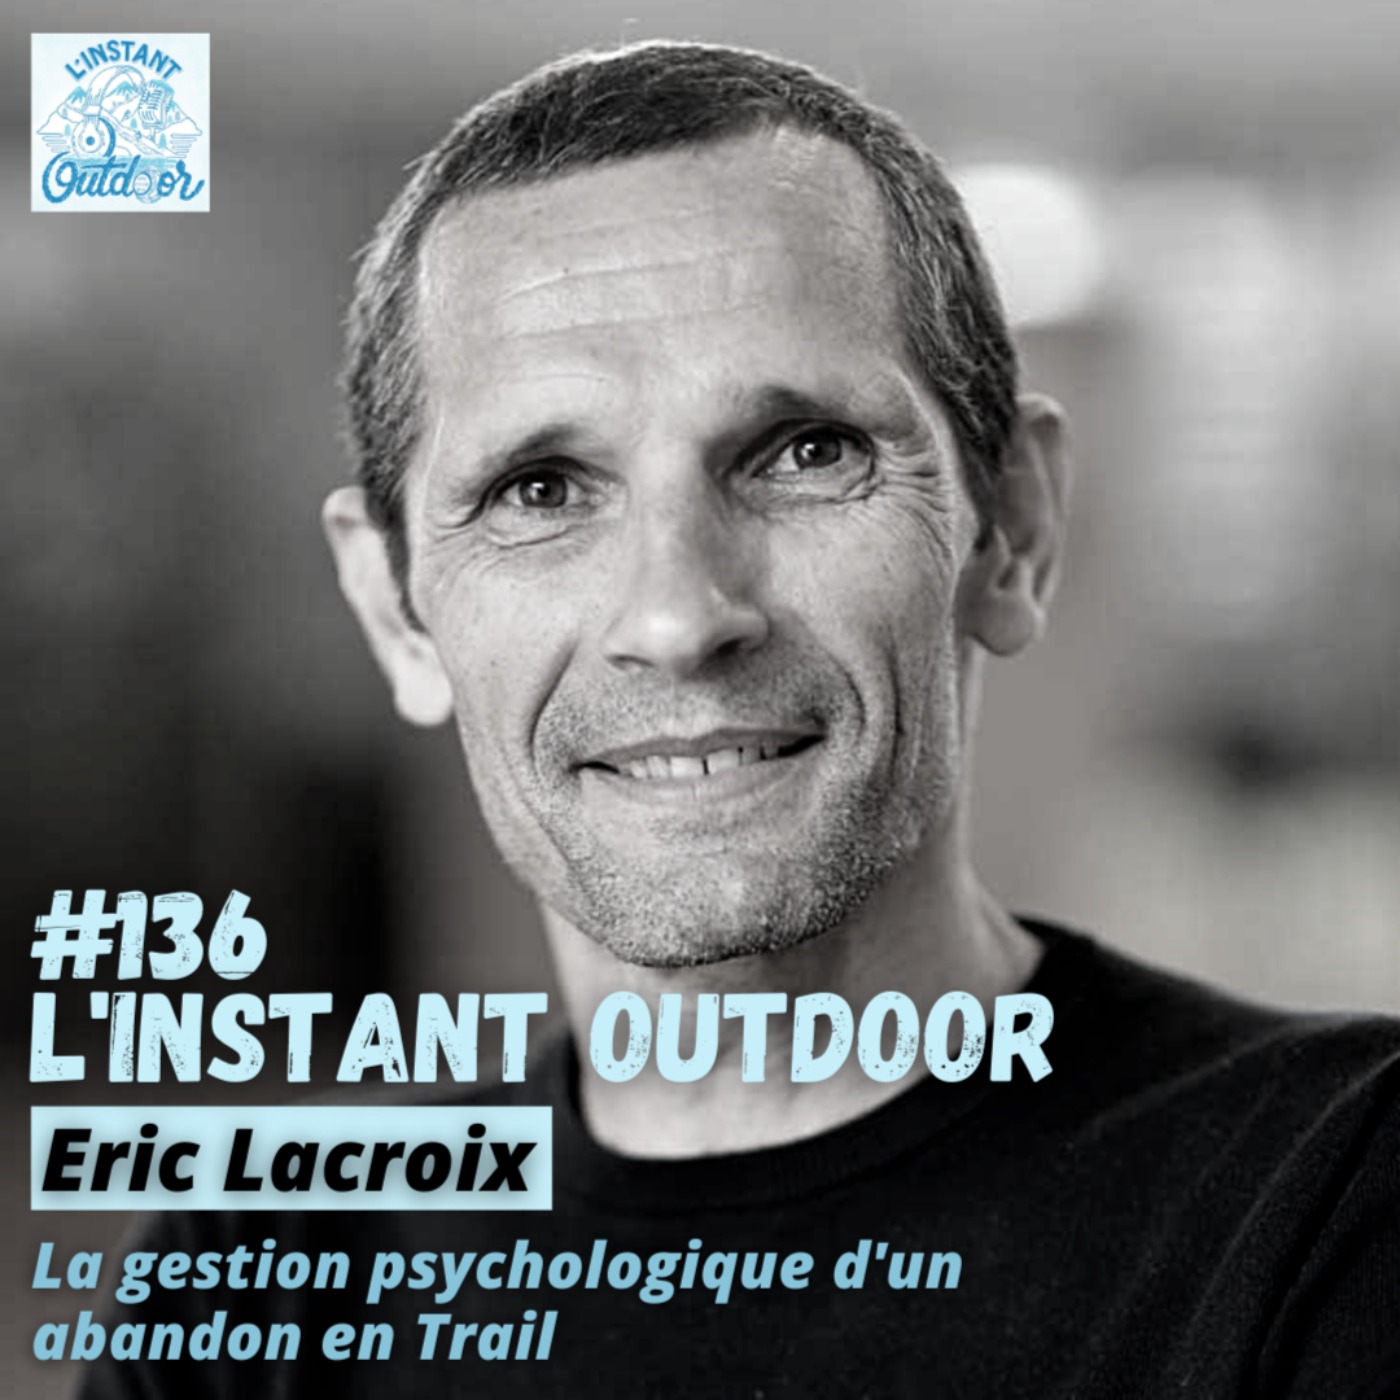 Eric Lacroix - La gestion psychologique d'un abandon en Trail